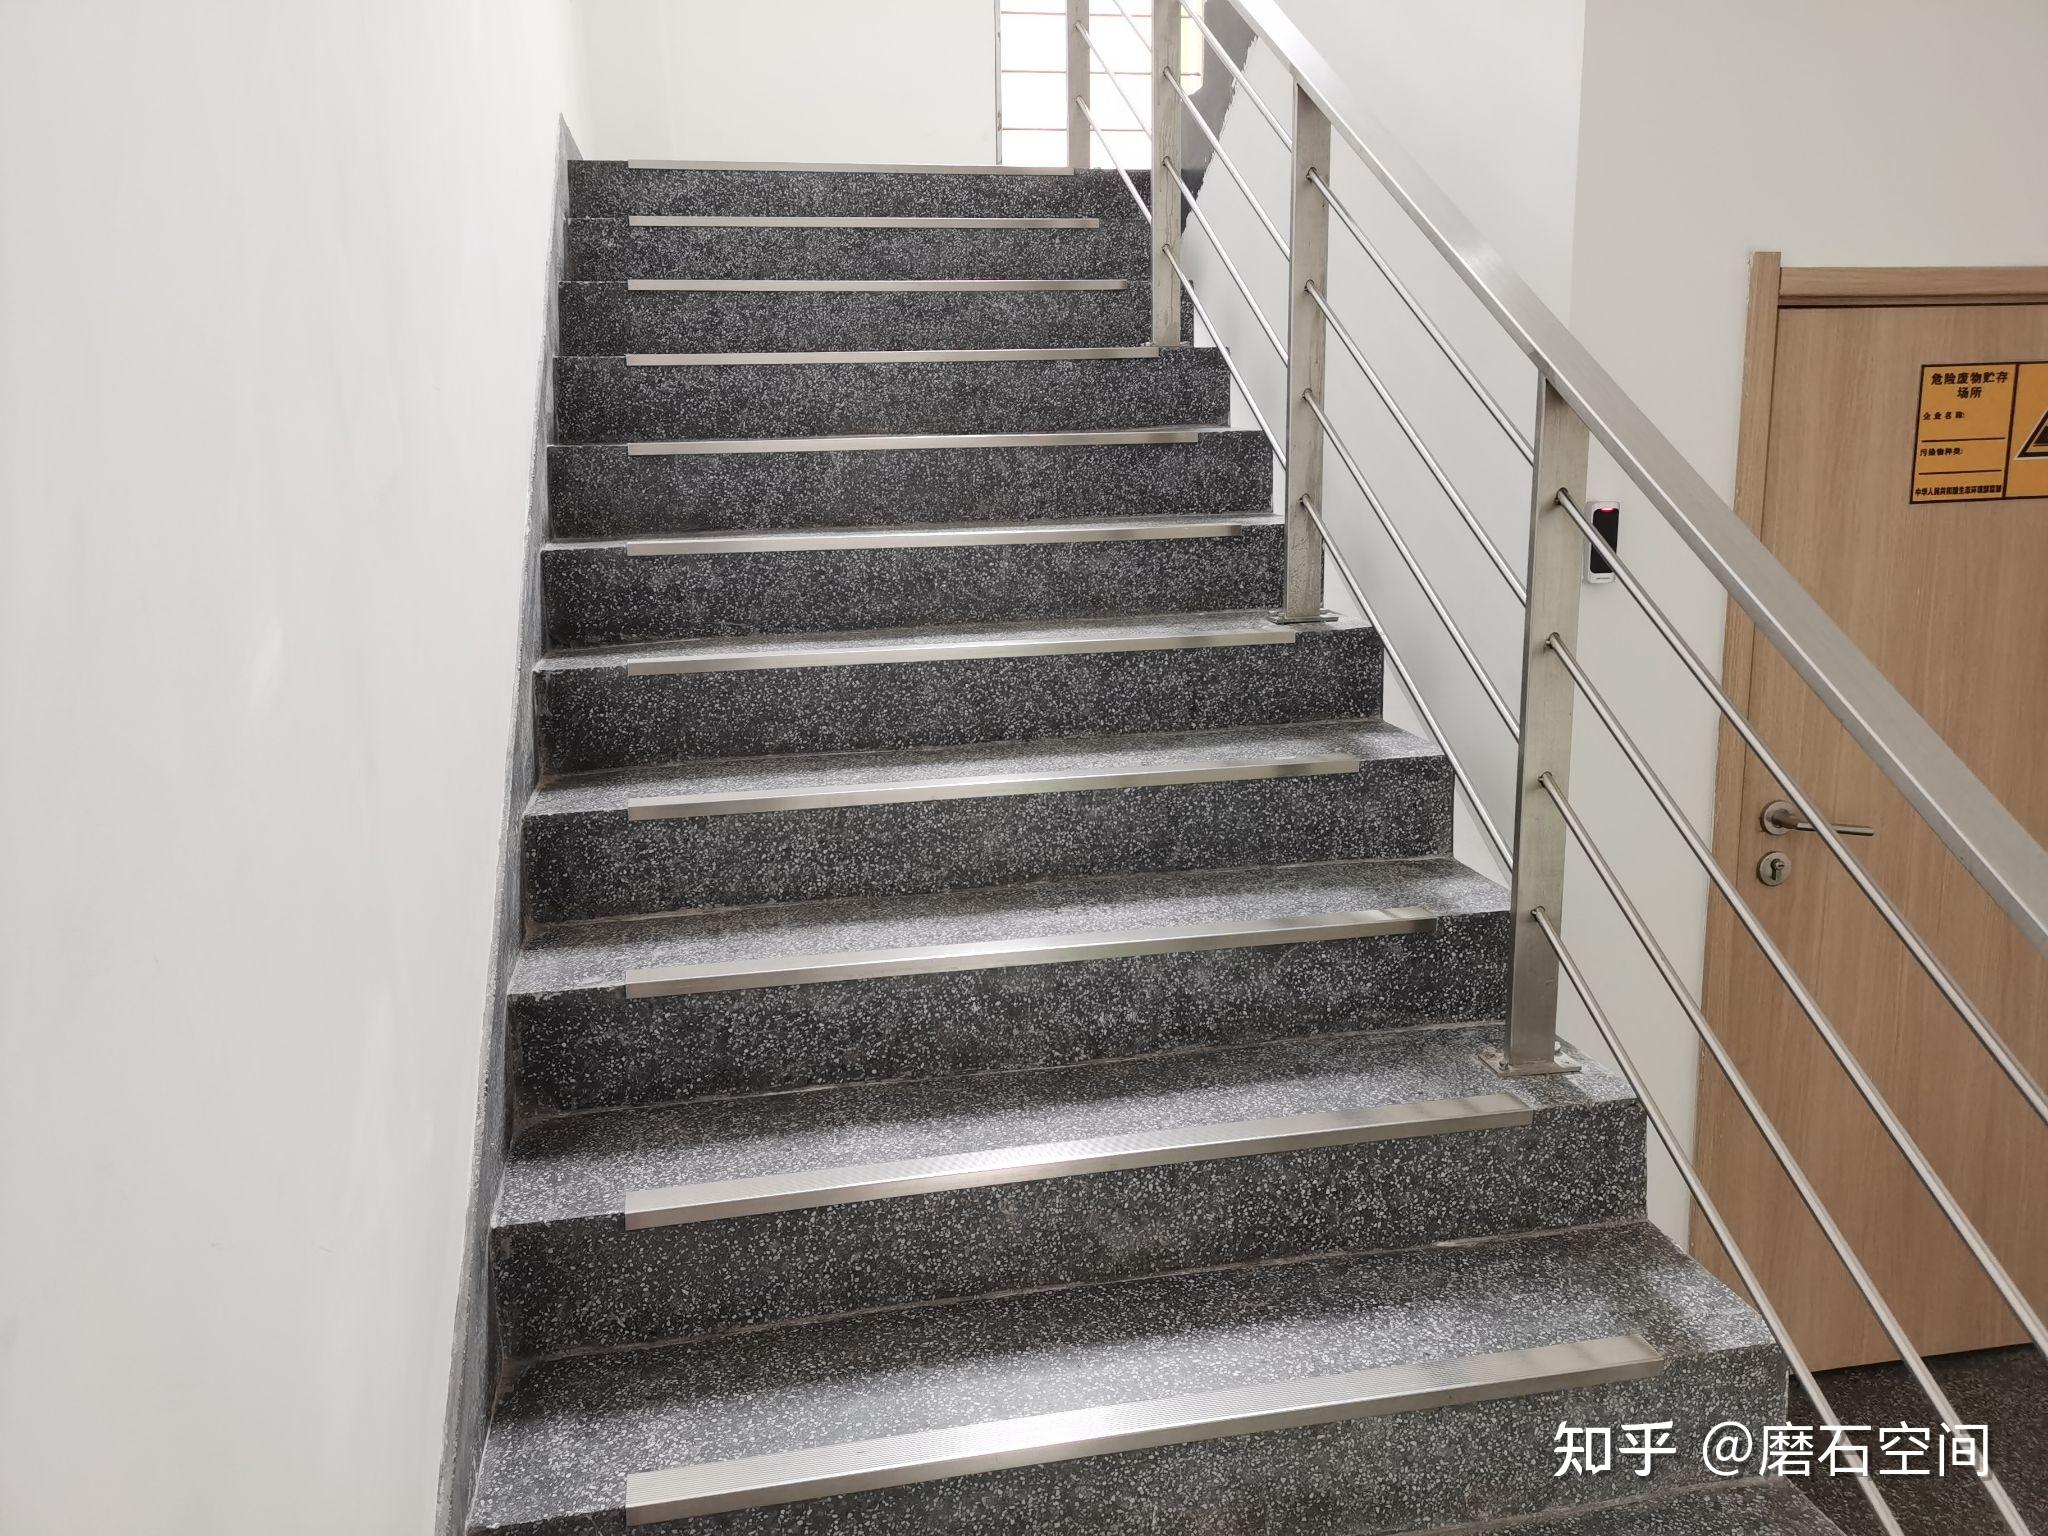 2019年10月施工区域:磨石地坪,楼梯踏步(含踢脚)业态类型:办公楼,实验